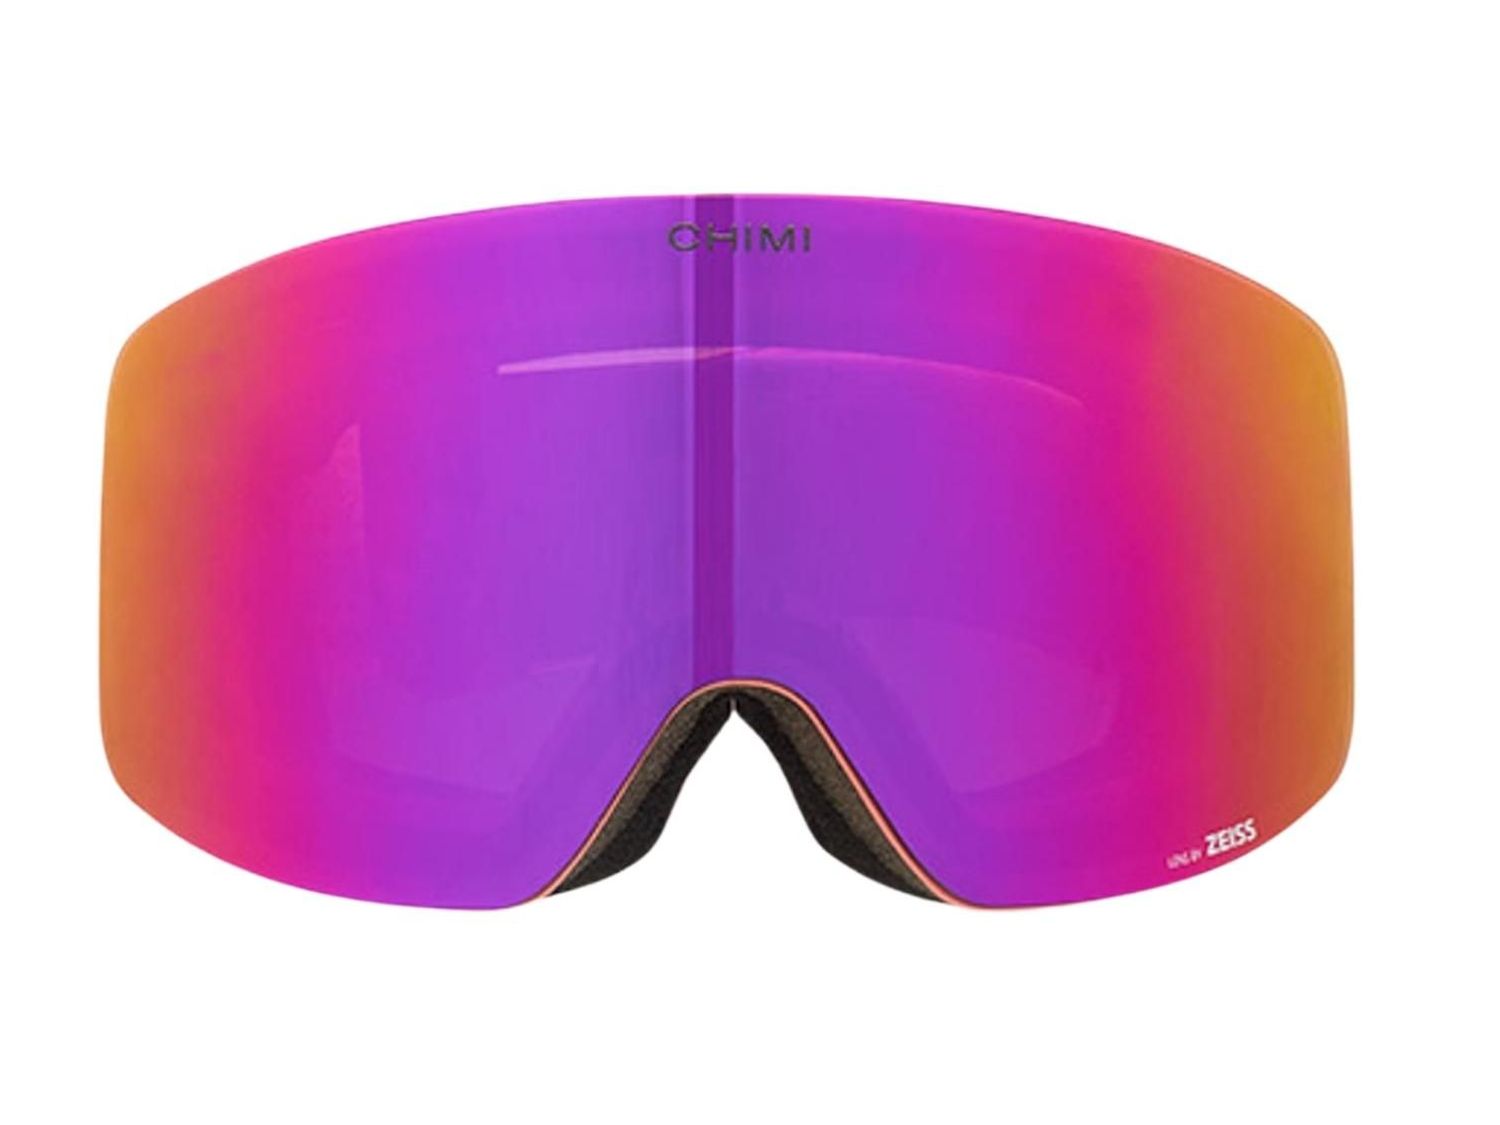 Best designer ski goggles in Scandinavia